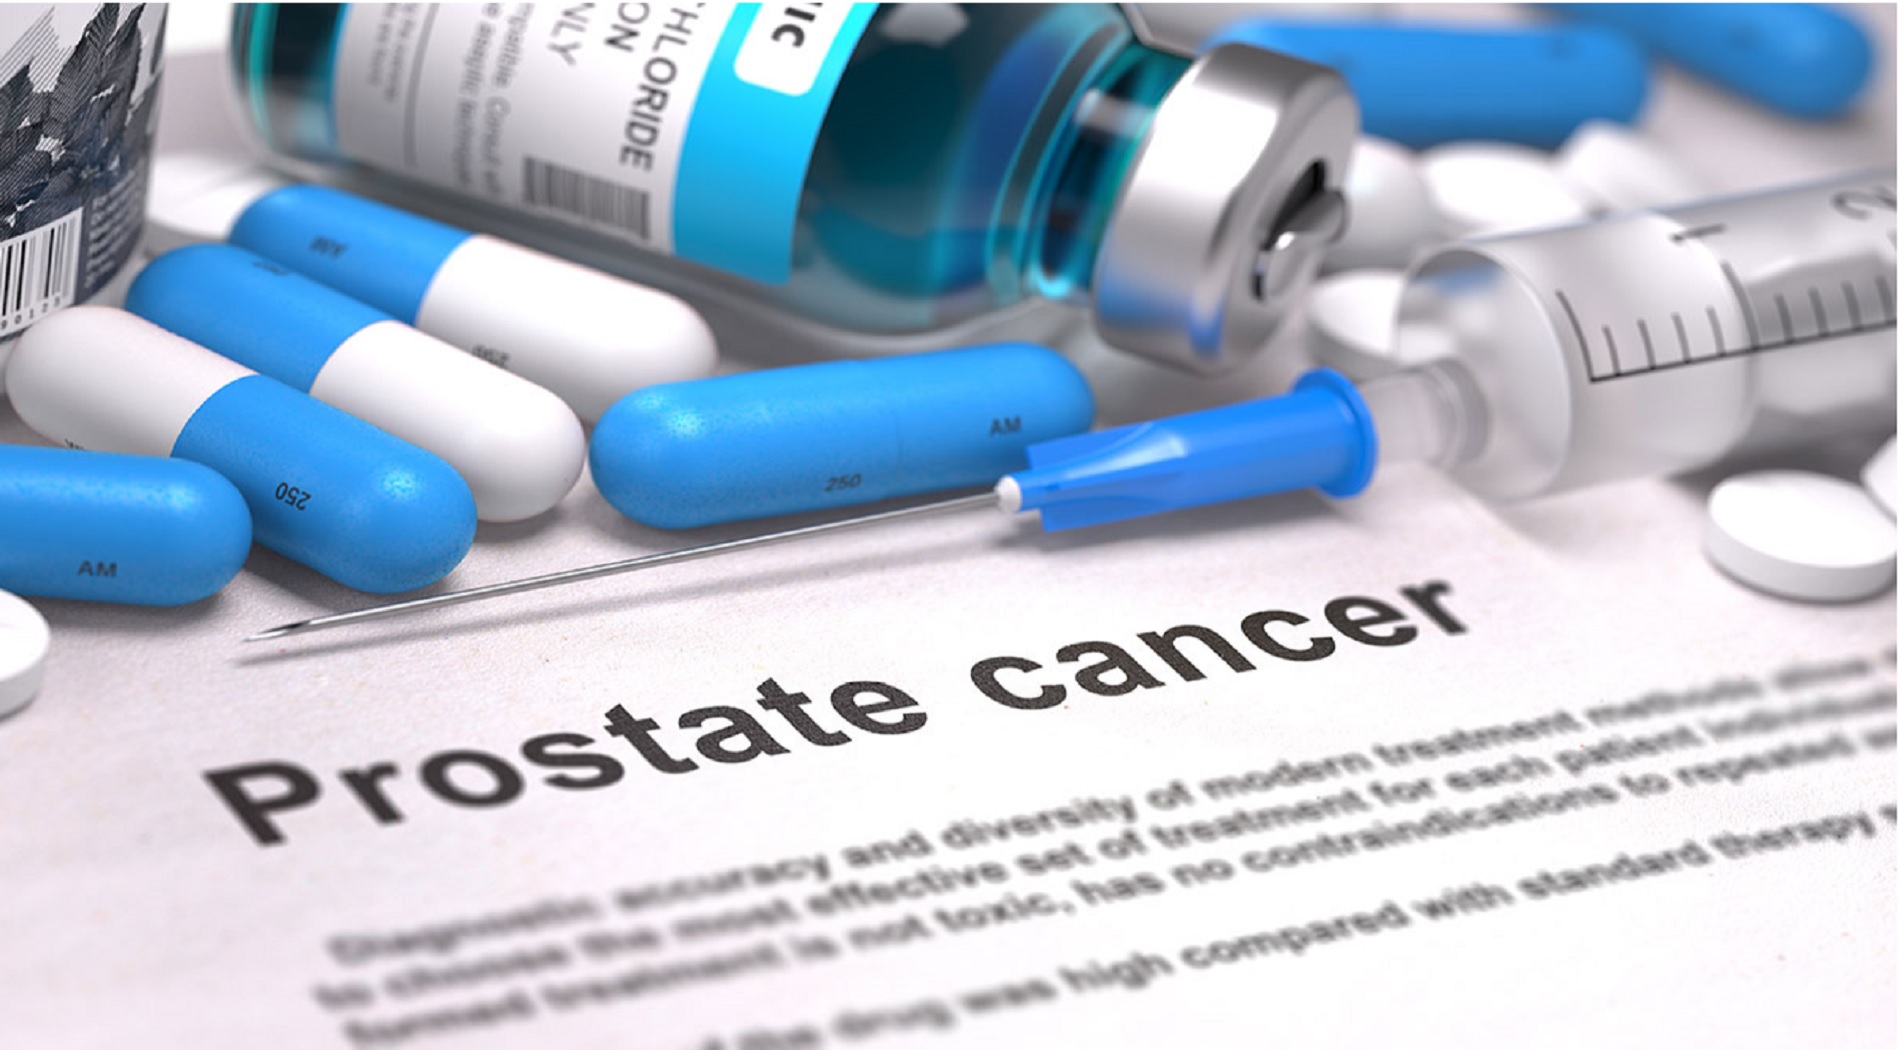 Βρετανοί επιστήμονες συνδέουν την τεστοστερόνη με τον καρκίνο του προστάτη